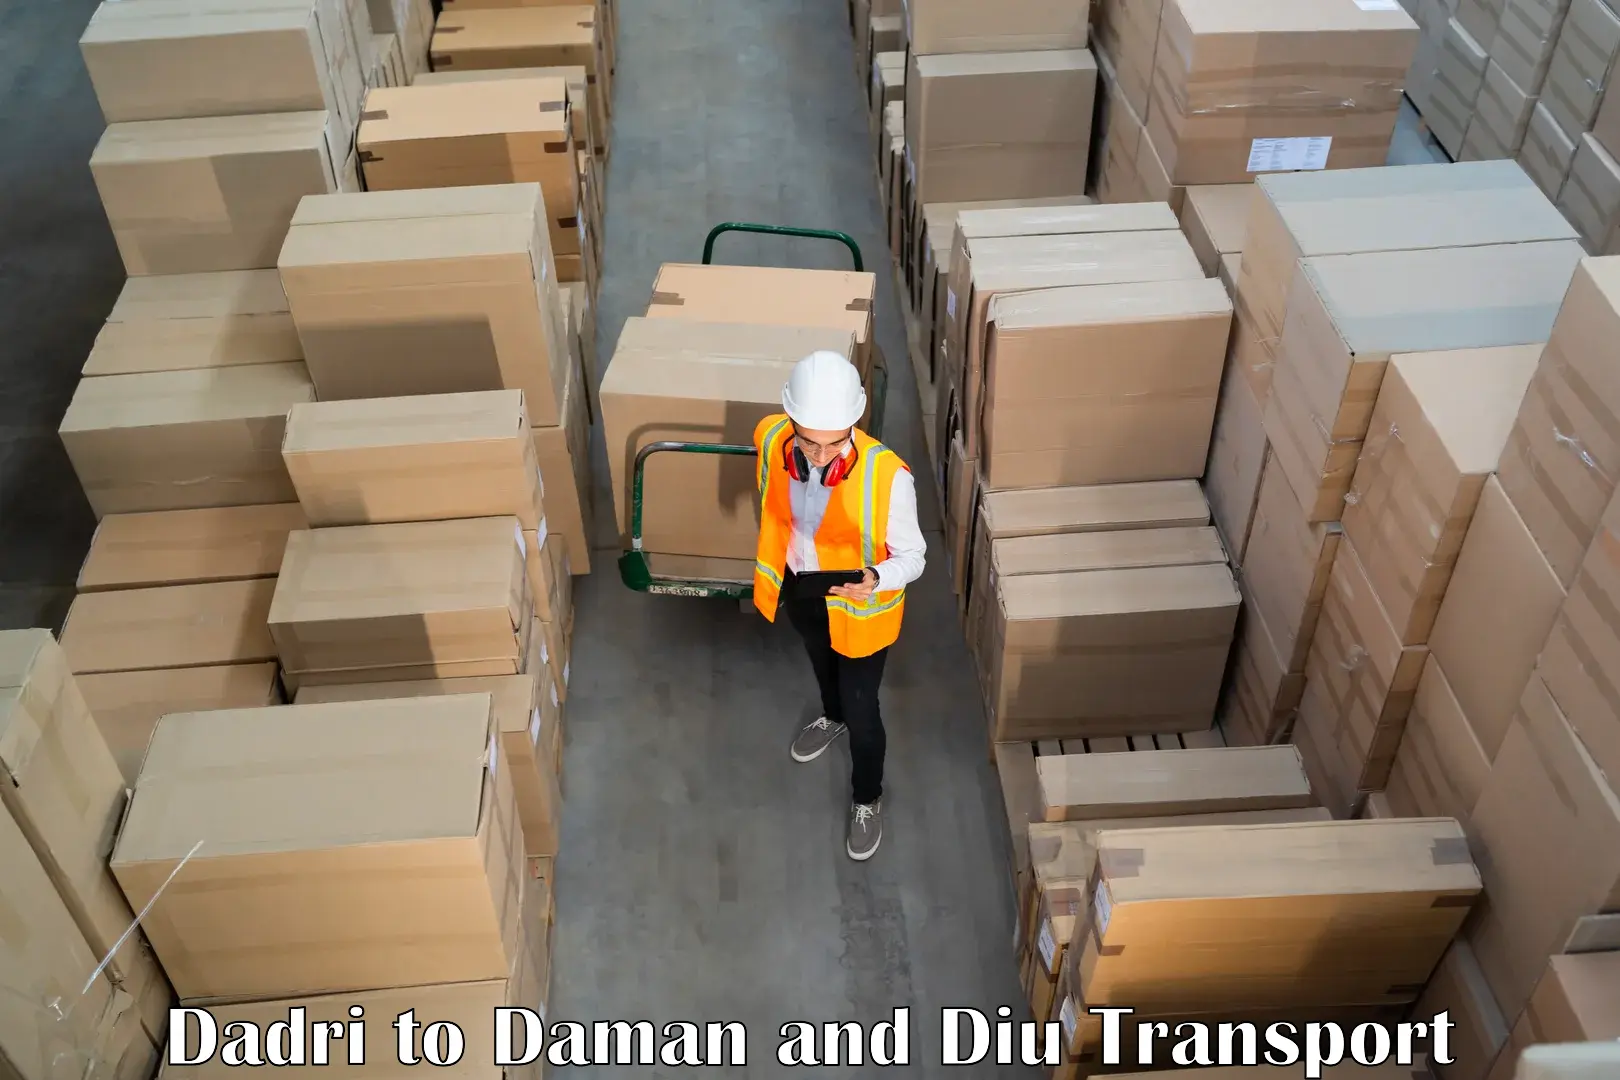 Transport in sharing Dadri to Daman